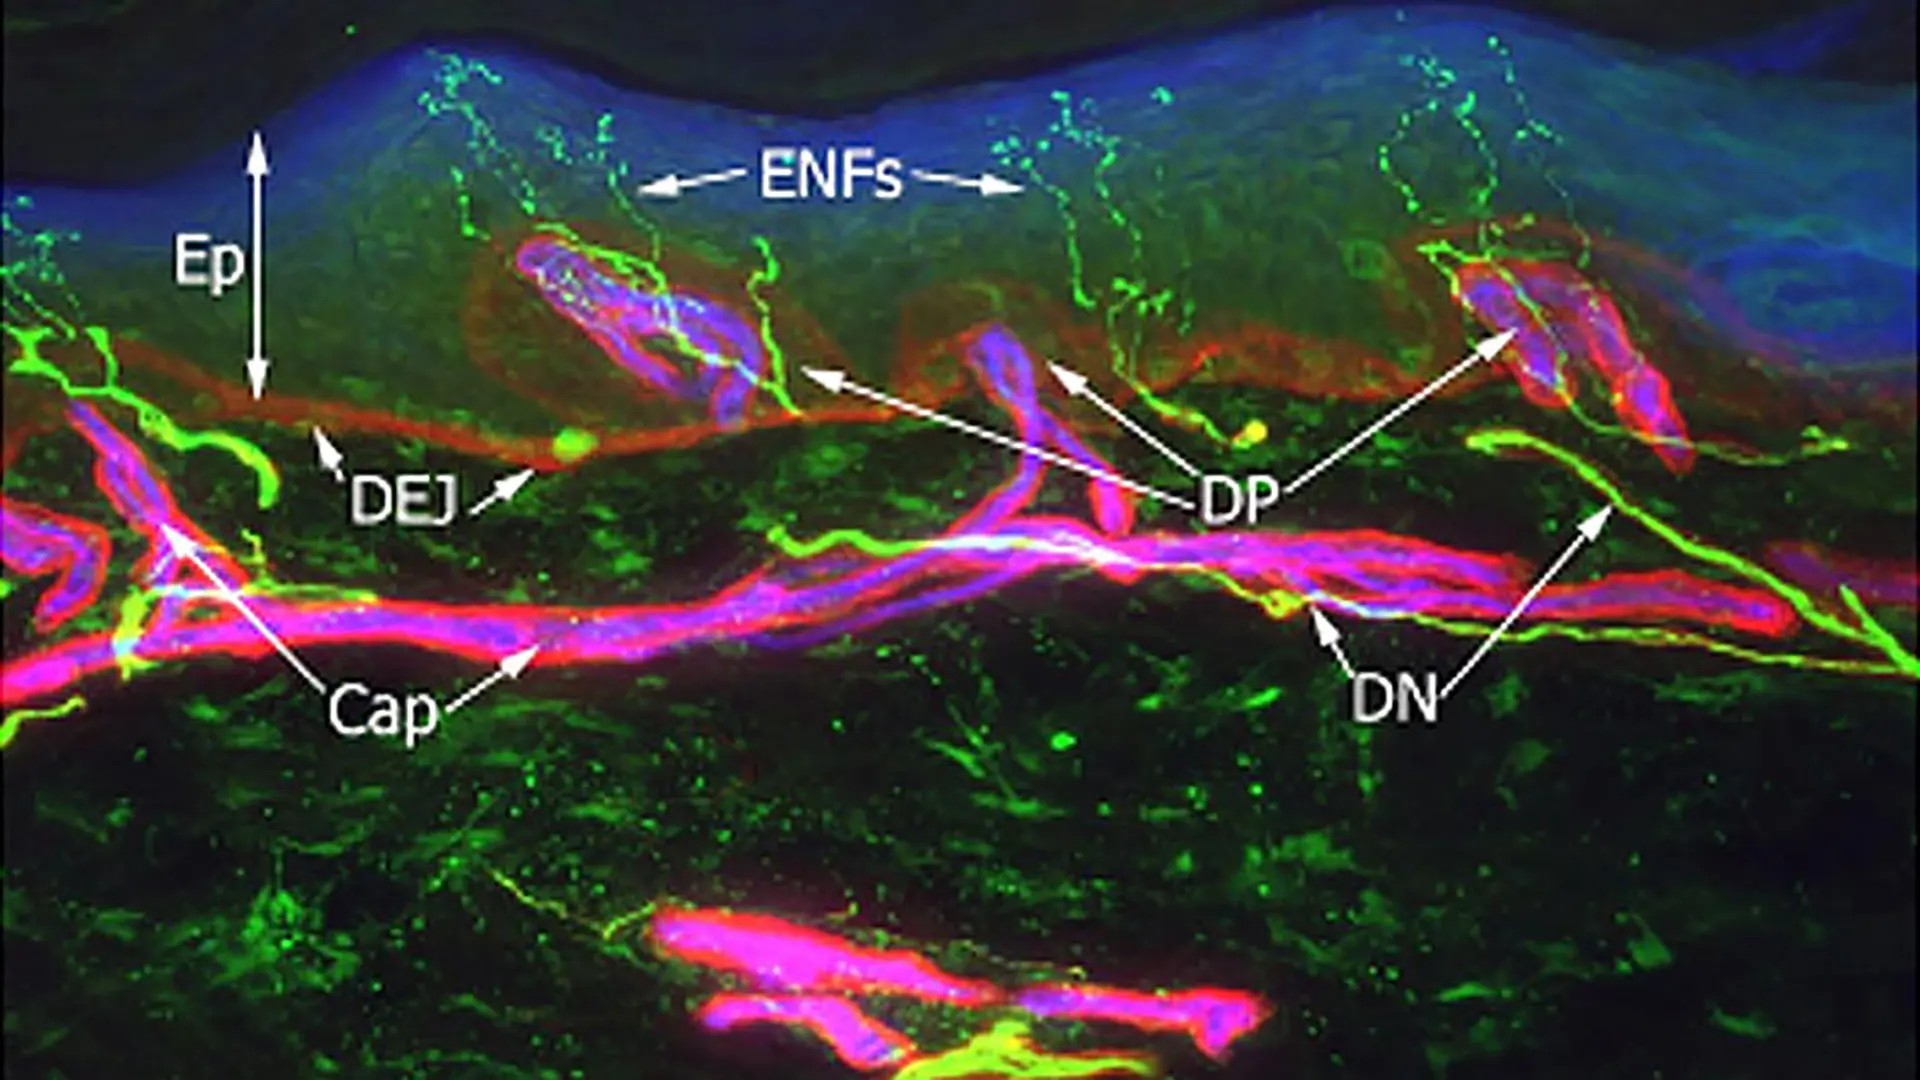 Epidermal nerve fibres